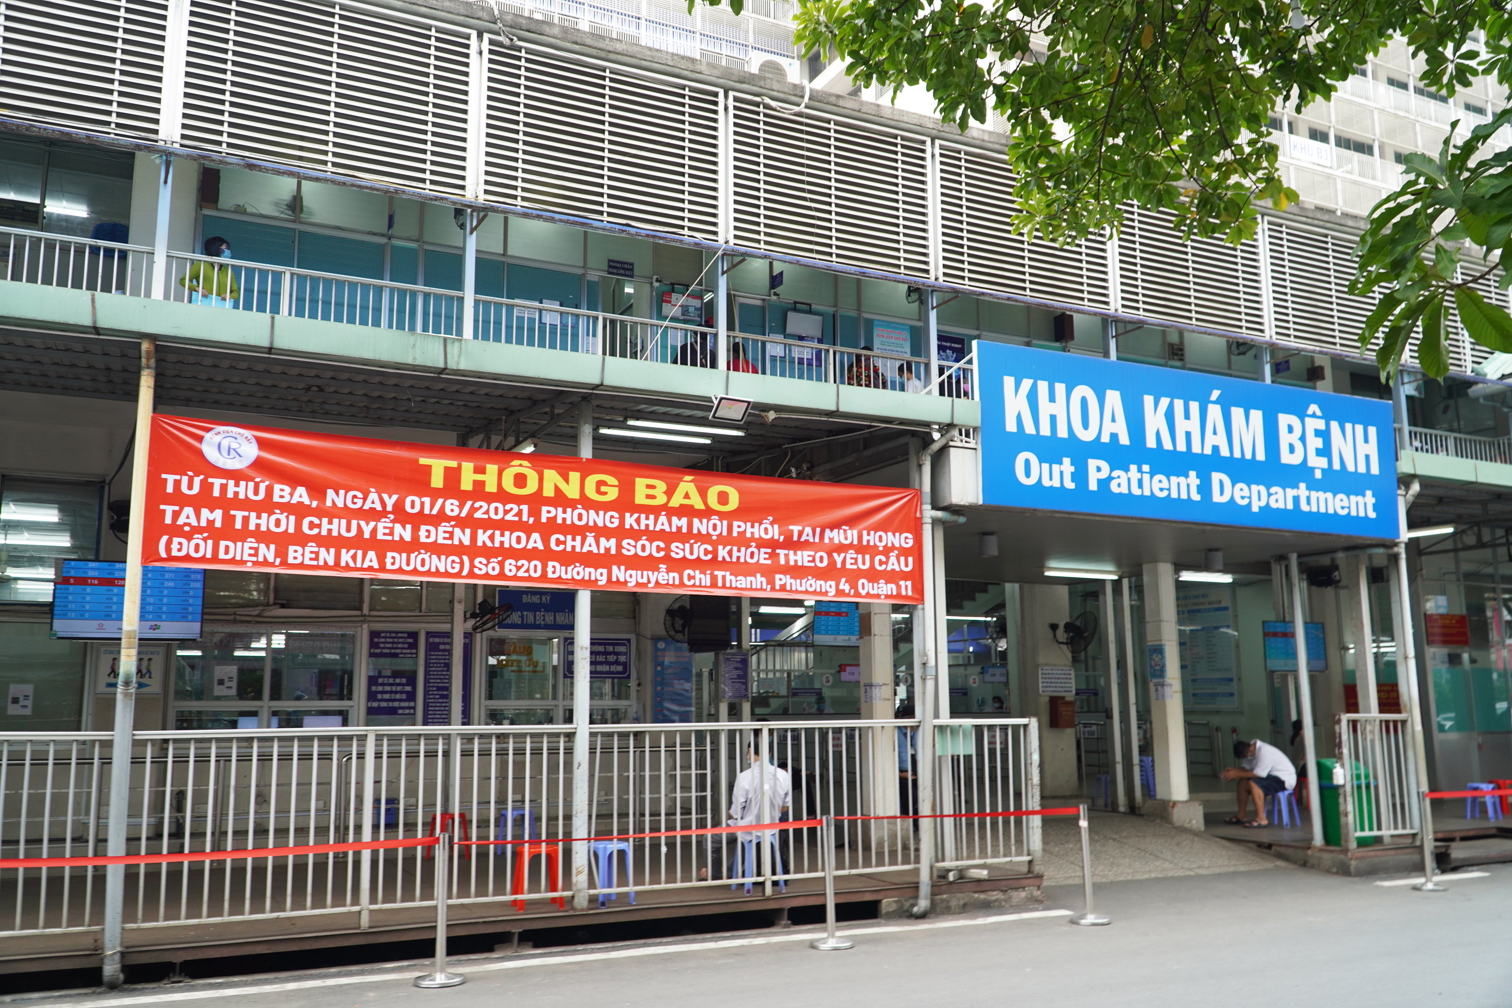 Thông báo đổi địa chỉ phòng khám Tai Mũi Họng và phòng khám Nội phổi của Khoa Khám bệnh ra bên ngoài khuôn viên Bệnh viện Chợ Rẫy